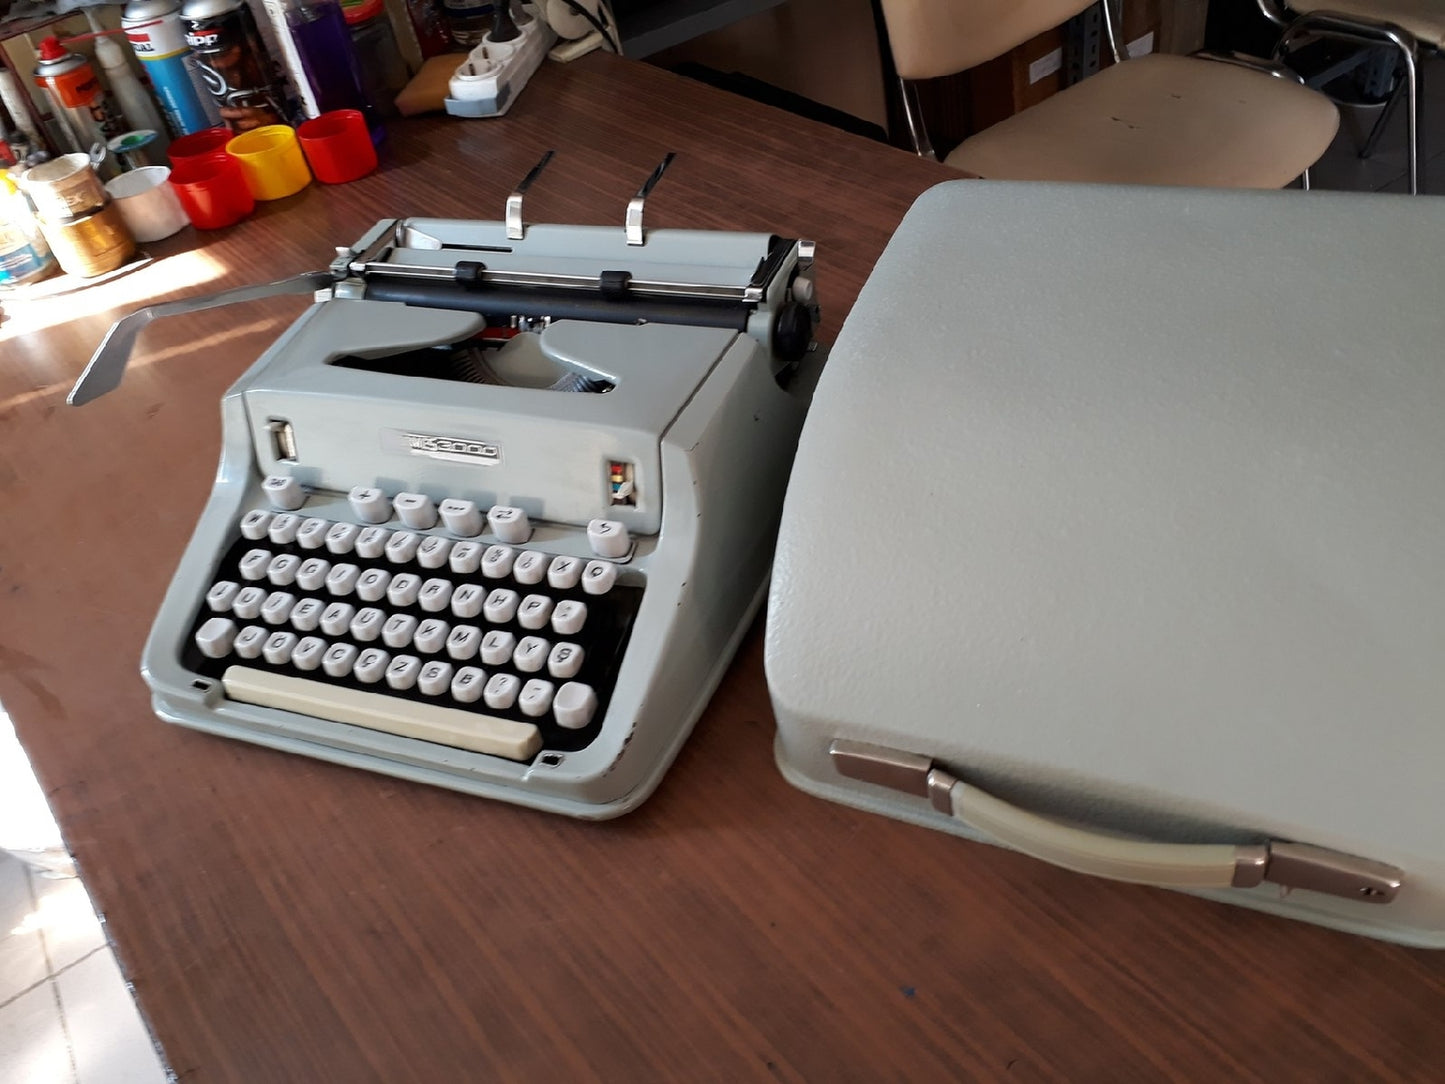 Hermes 3000 portable typewriter